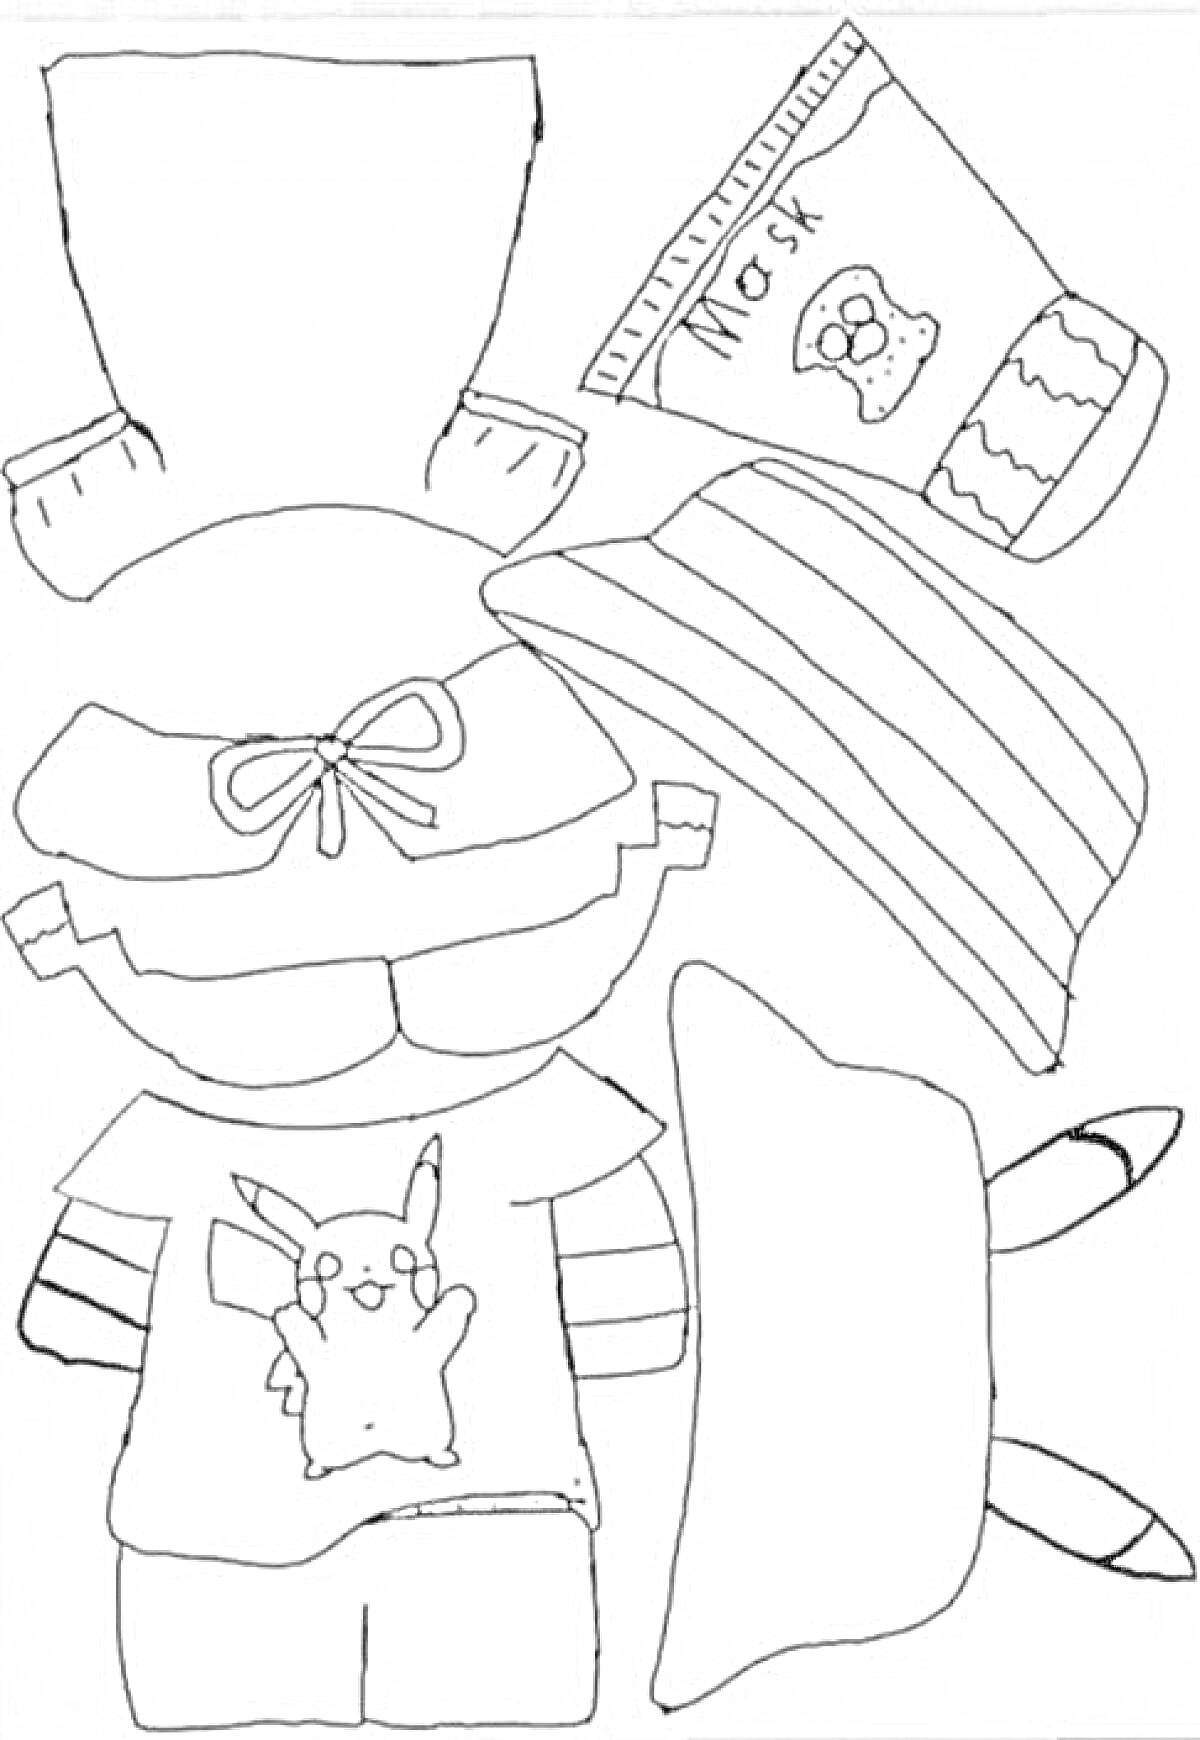 Раскраска Лалафанфан с одеждой (включает футболку с рисунком покемона, шортики, шапочку с бантом, маску, полосатый шарф, и шляпу с ушками)